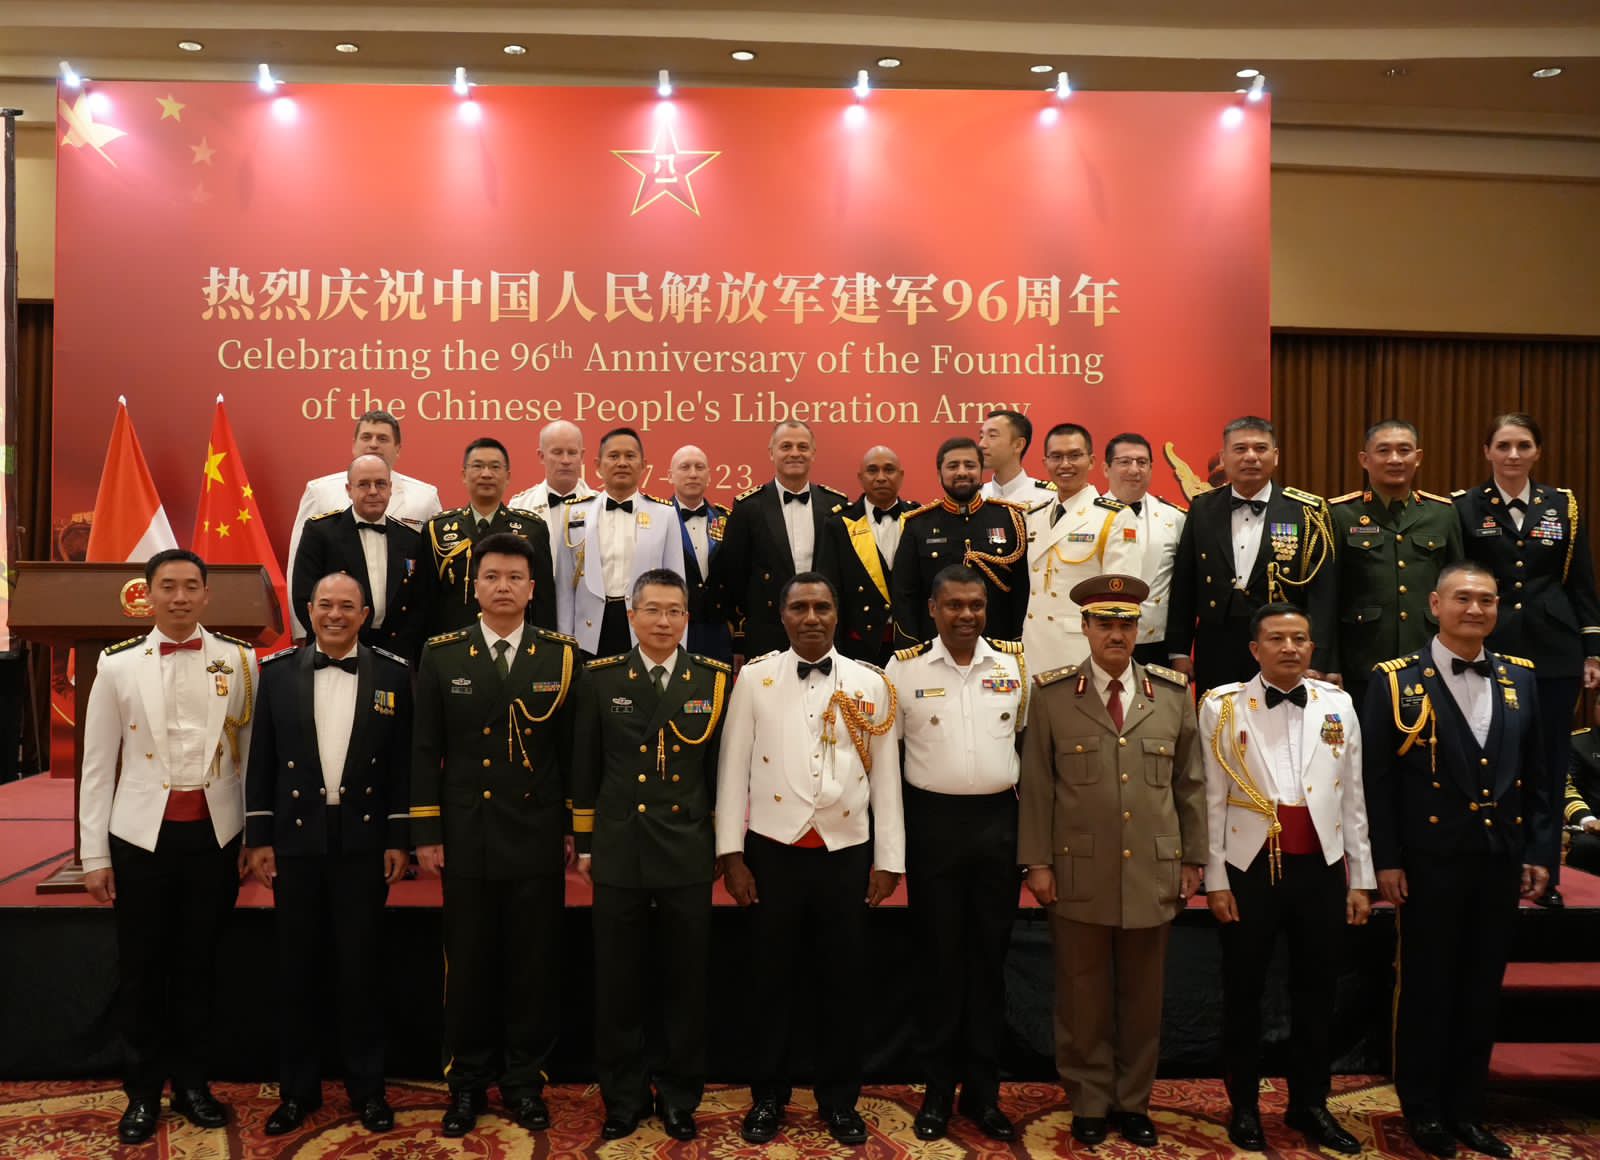 TNI Dan Militer Cina Perkuat Diplomasi Serta Kerja Sama Pertahanan Demi Kemajuan Bersama